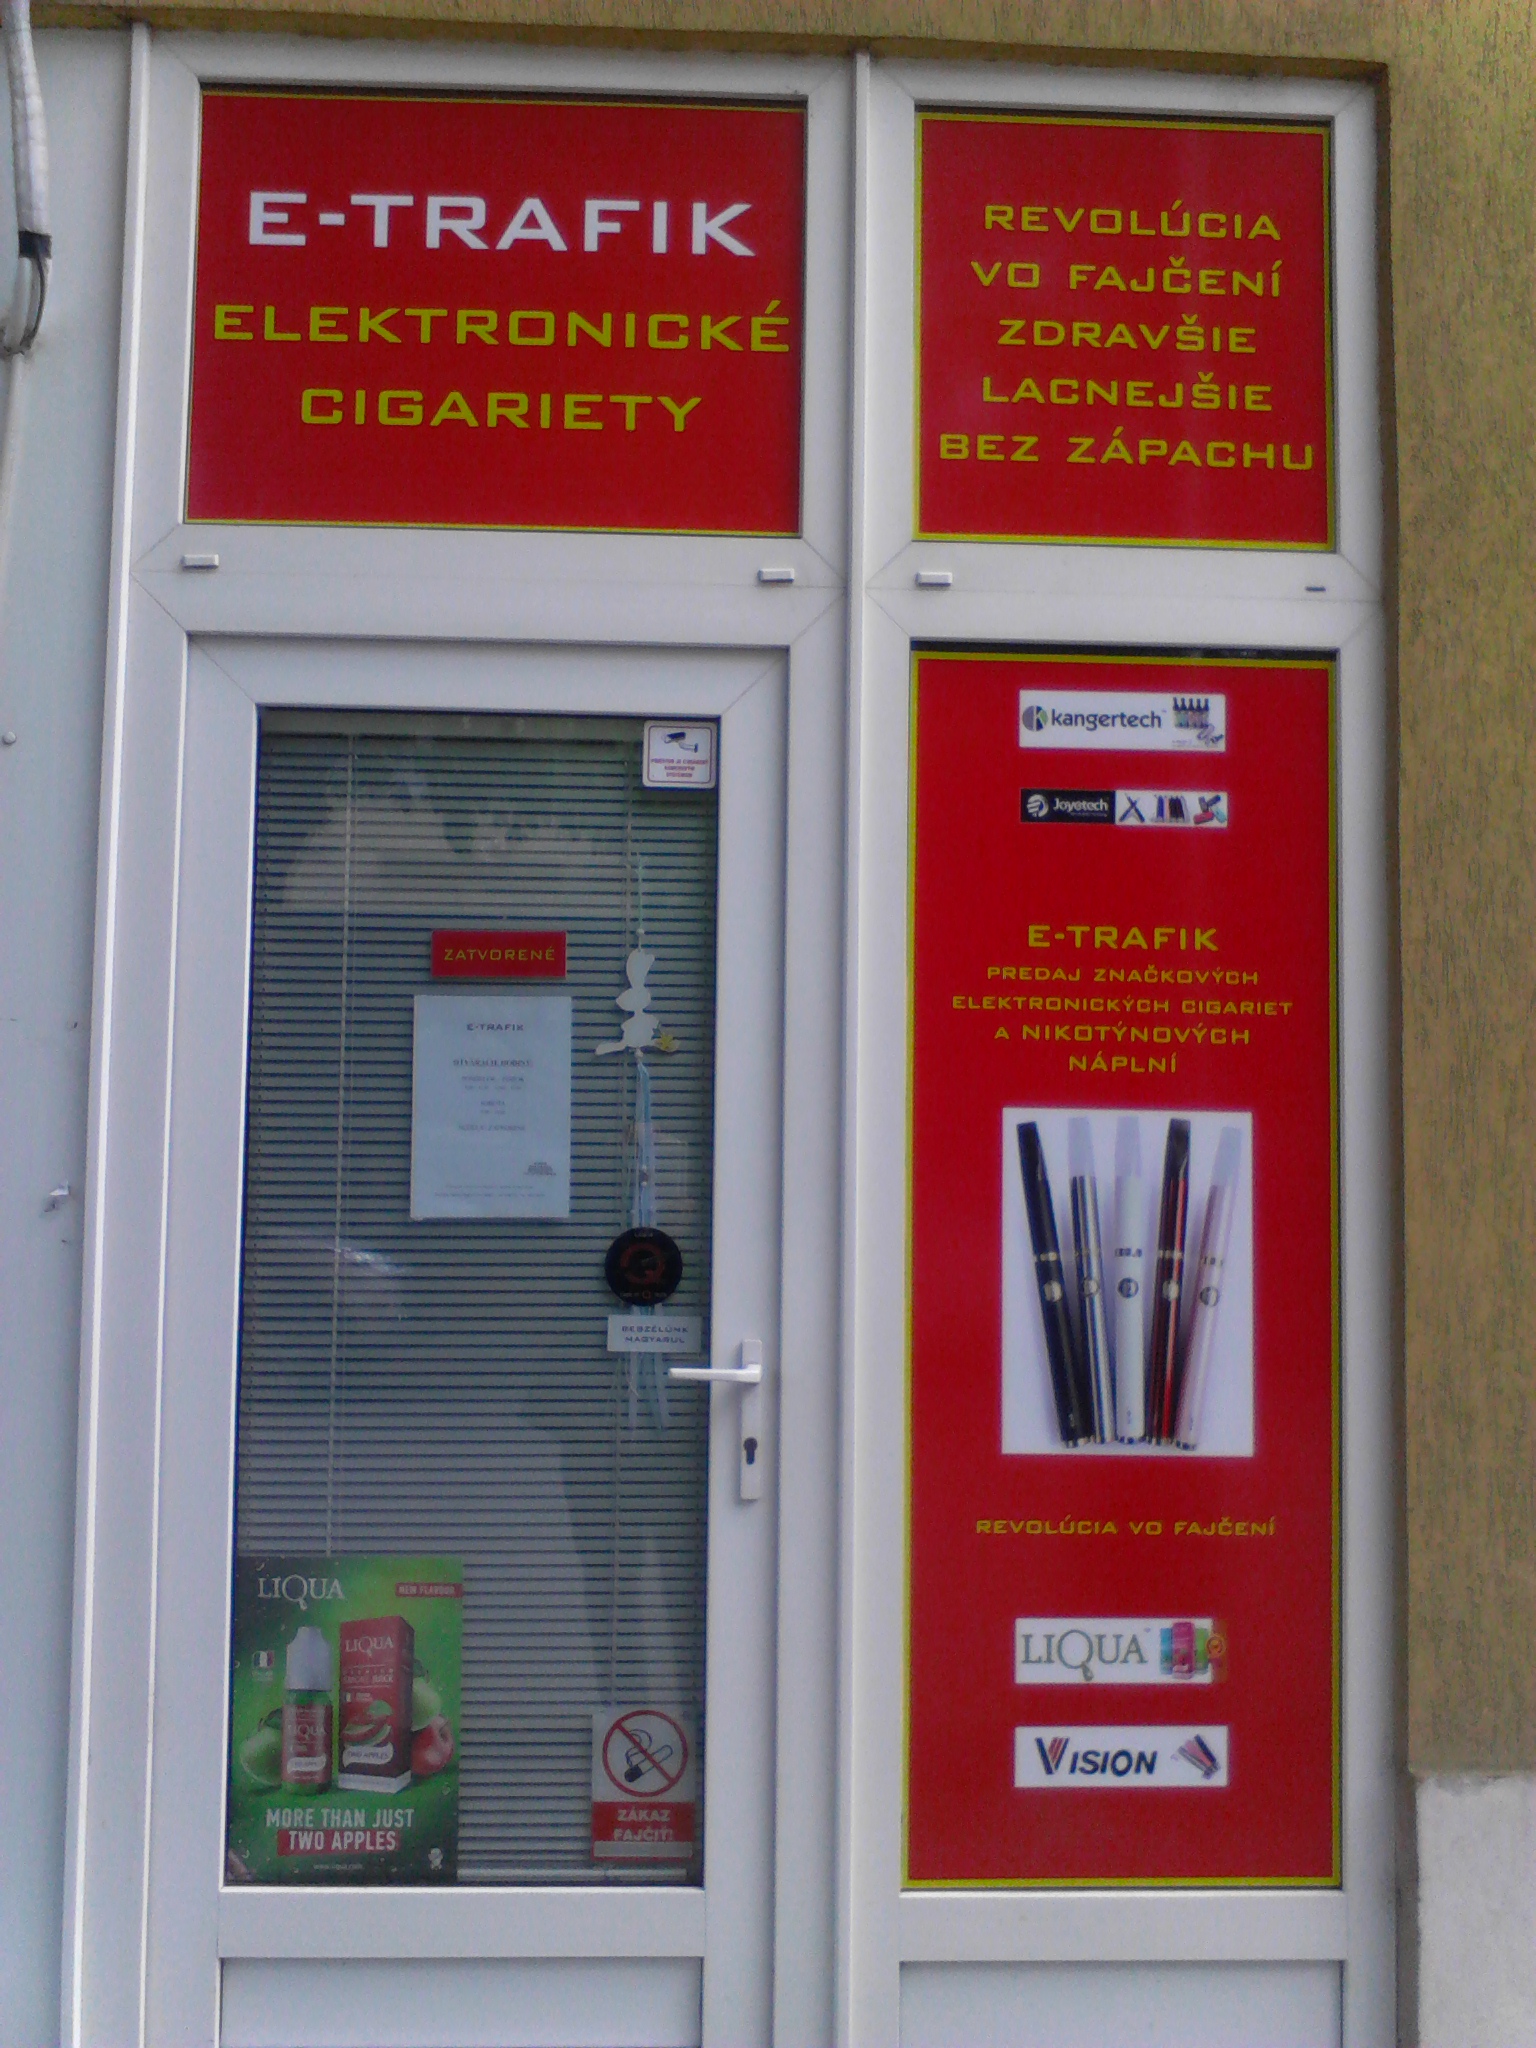 Predaj elektronických cigariet, príslušenstva, nikotinové a beznikotinové liquidy a bázy - Kontakty na Sylvia Patkolóová - Elektronické cigarety E-TRAFIK